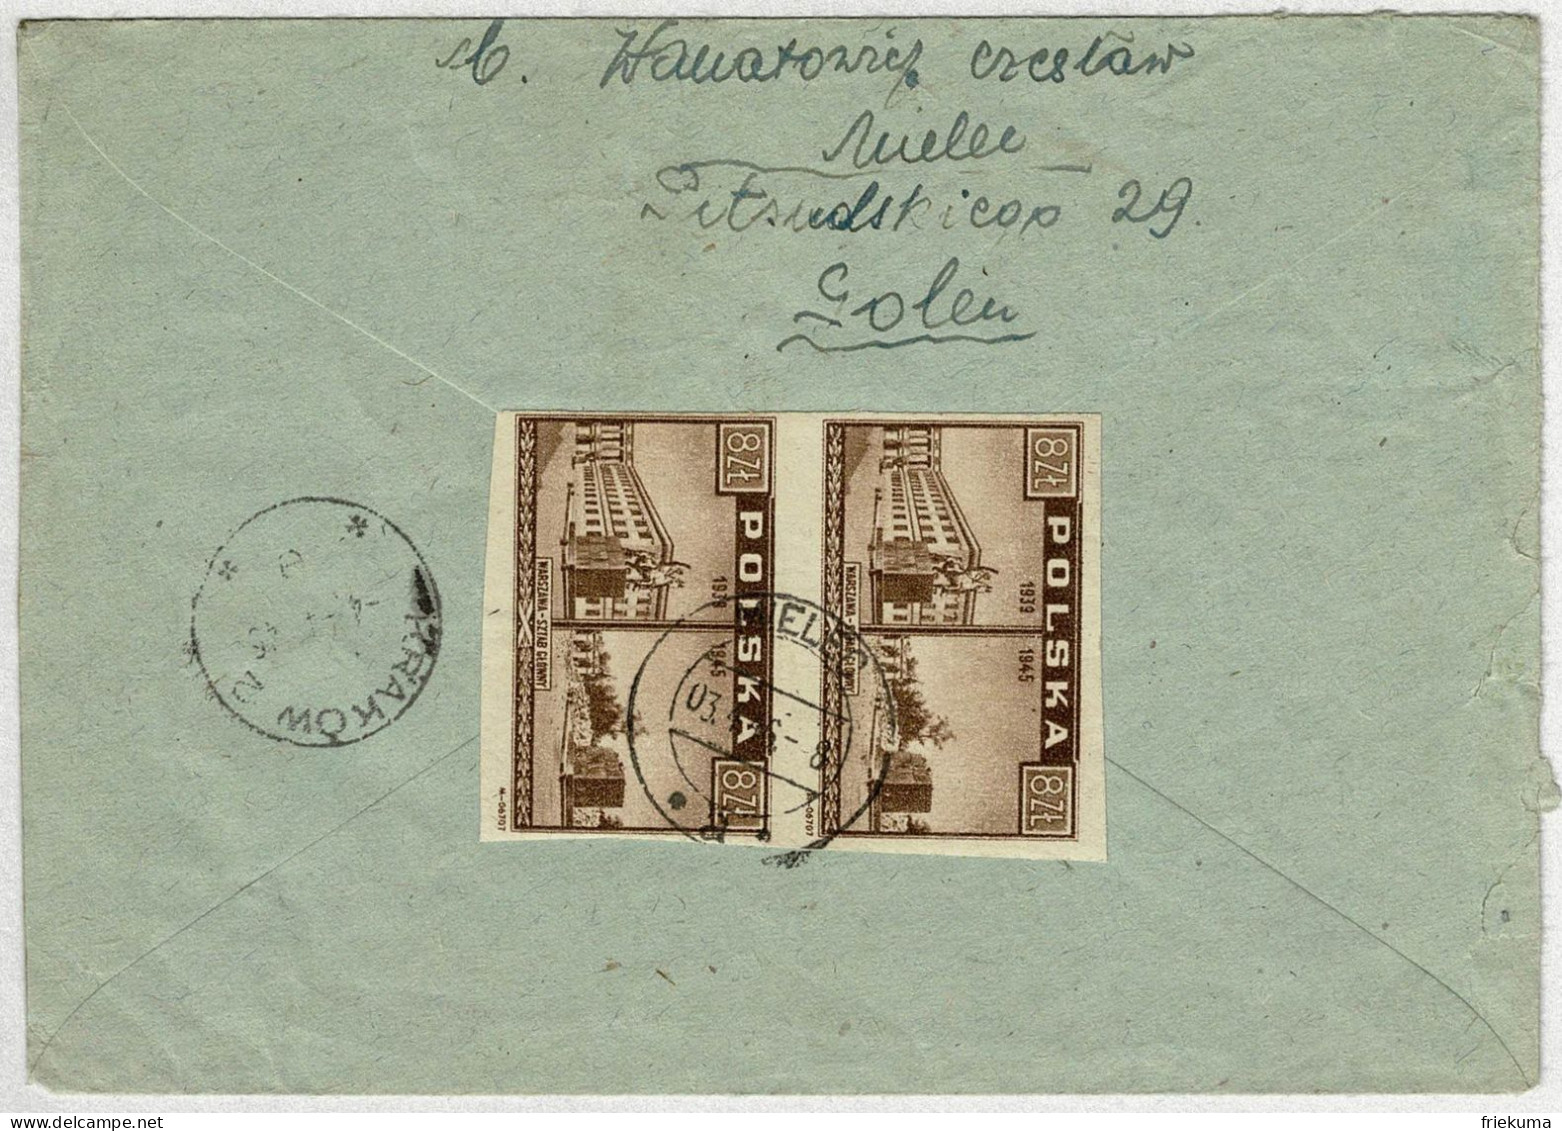 Polen / Polska 1946, Brief Einschreiben Mielec - Waltensburg Station (Schweiz), Frankatur Rückseite, Zensur R.P. 3153 - Covers & Documents